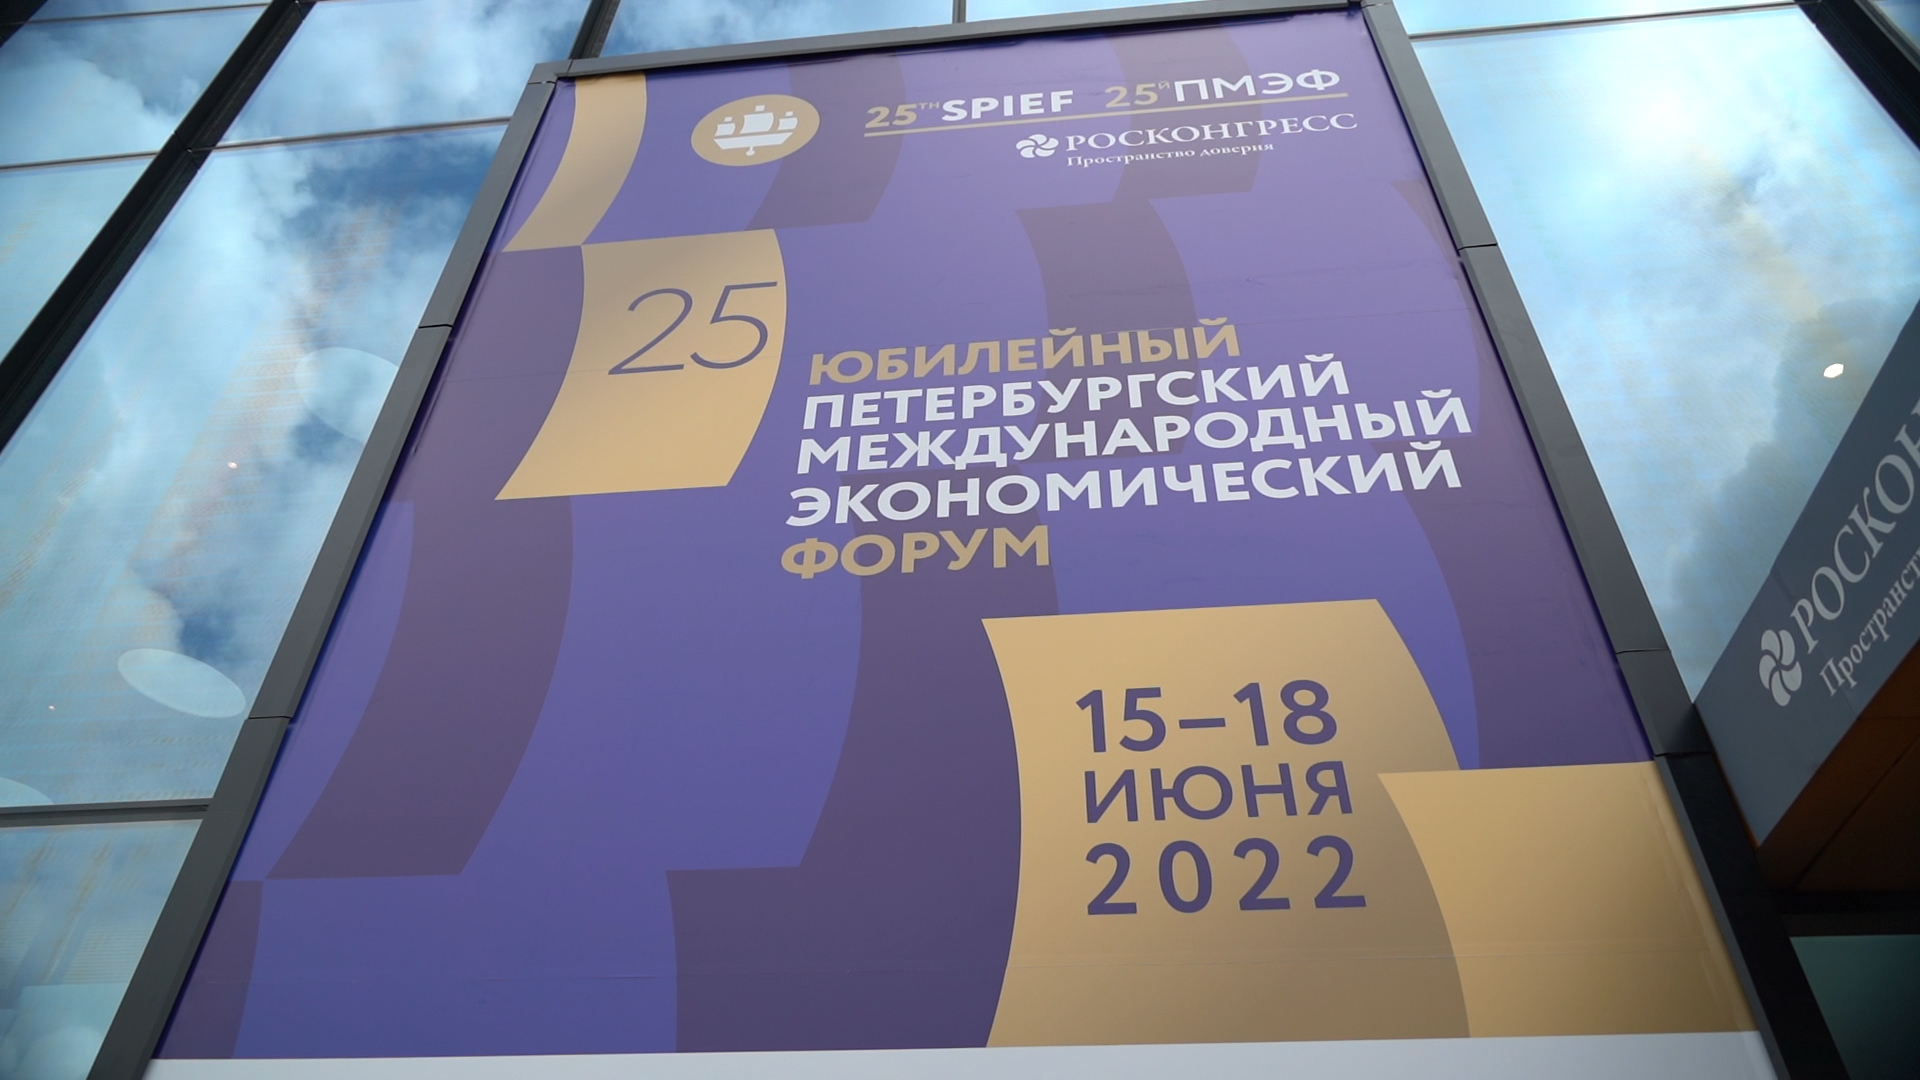 Филипп Киркоров, Дуняша и цветотерапия: как прошел первый день на ПМЭФ-2022